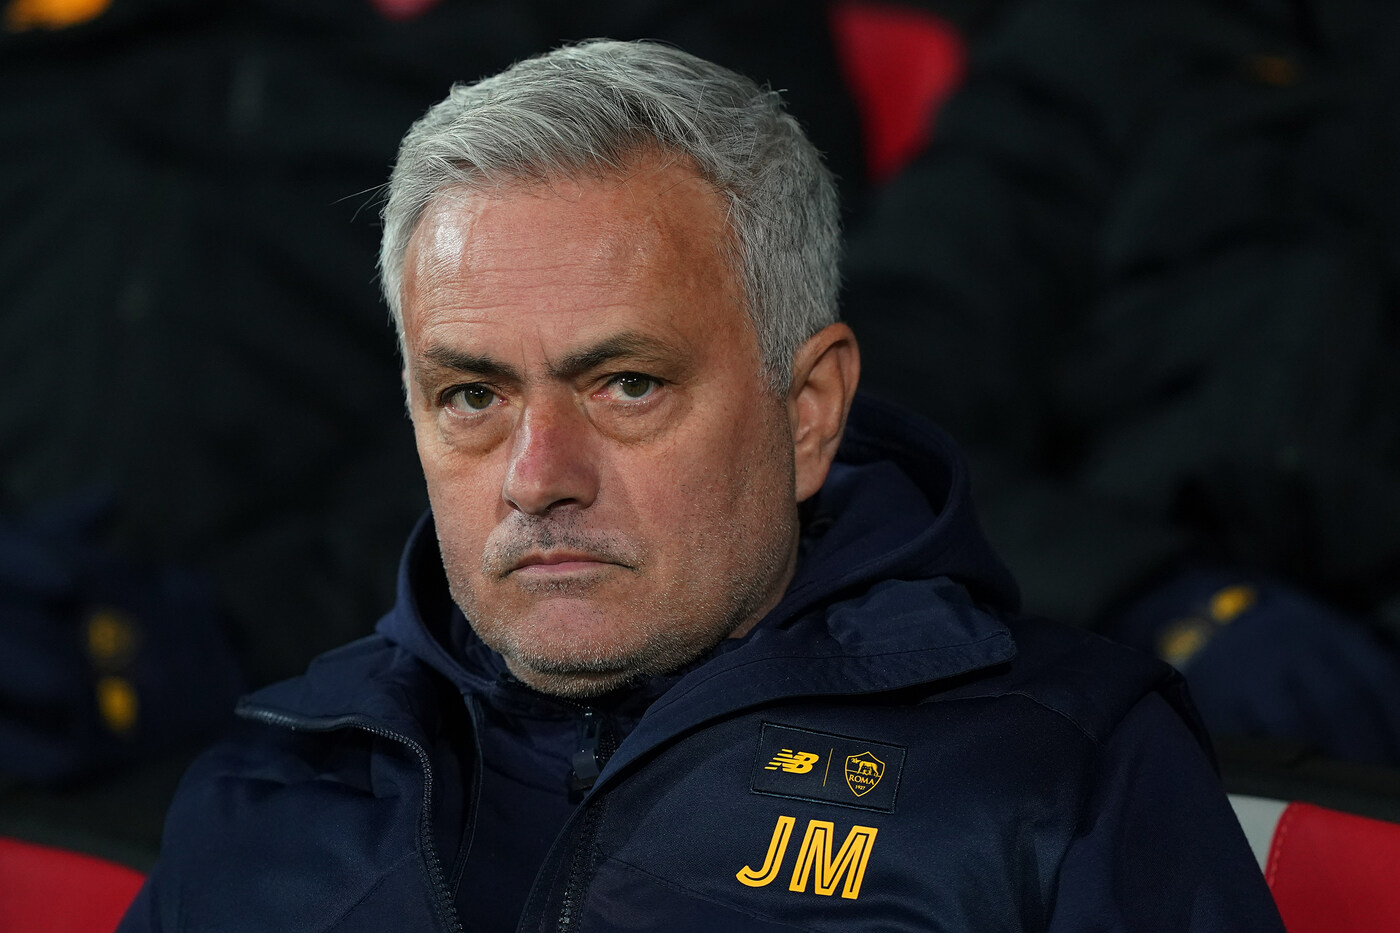 Annullata la squalifica a José Mourinho: sarà in panchina contro la Juve